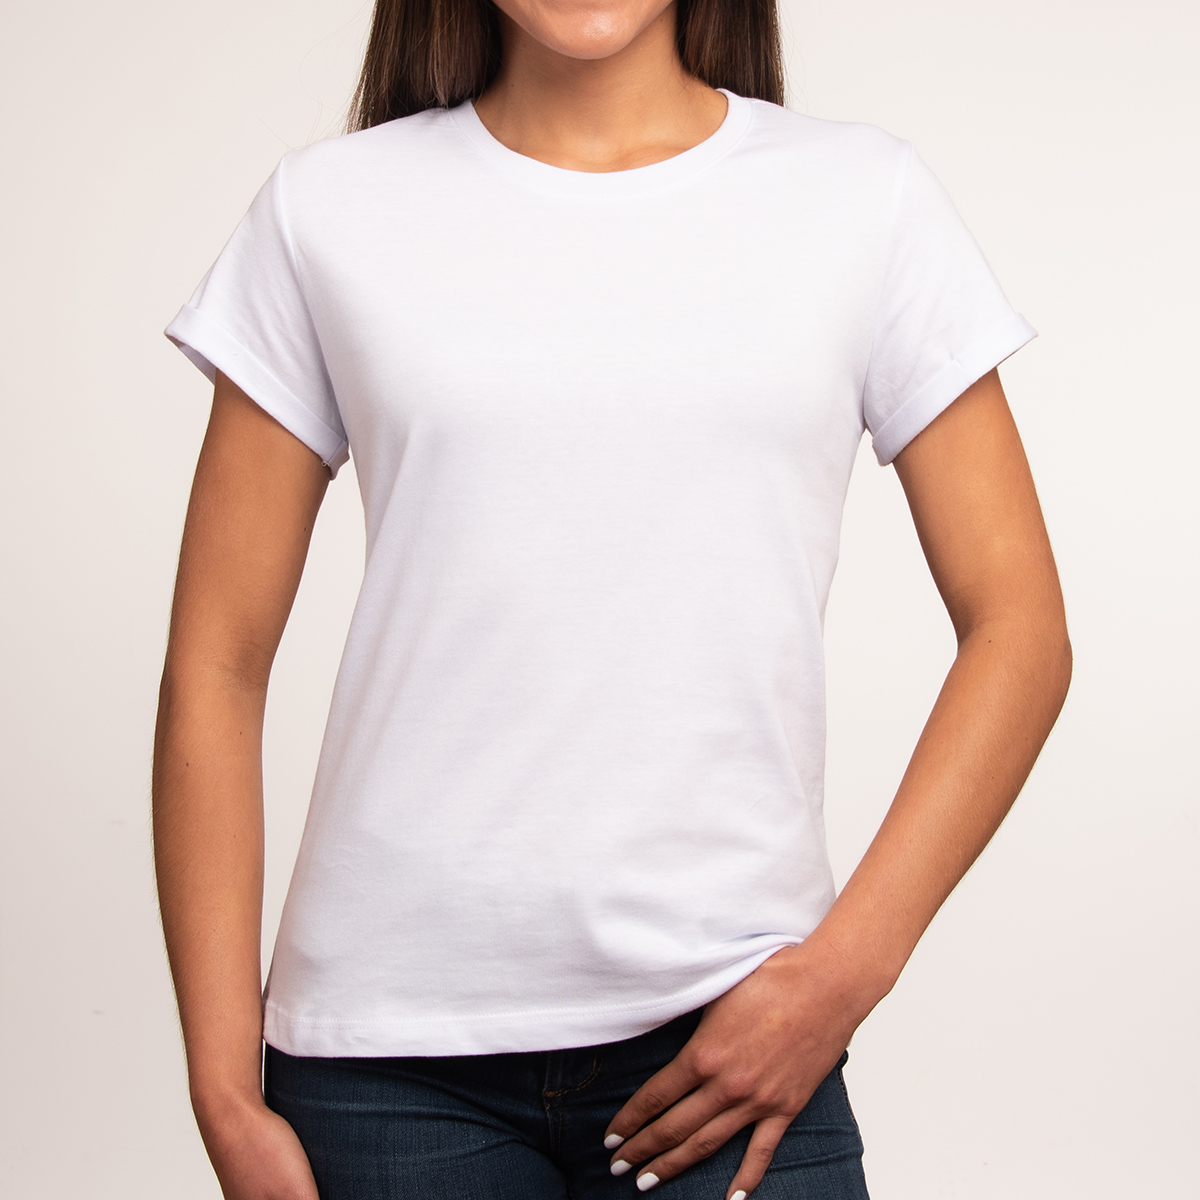 Las mejores ofertas en Camisetas Blancas Para Mujeres